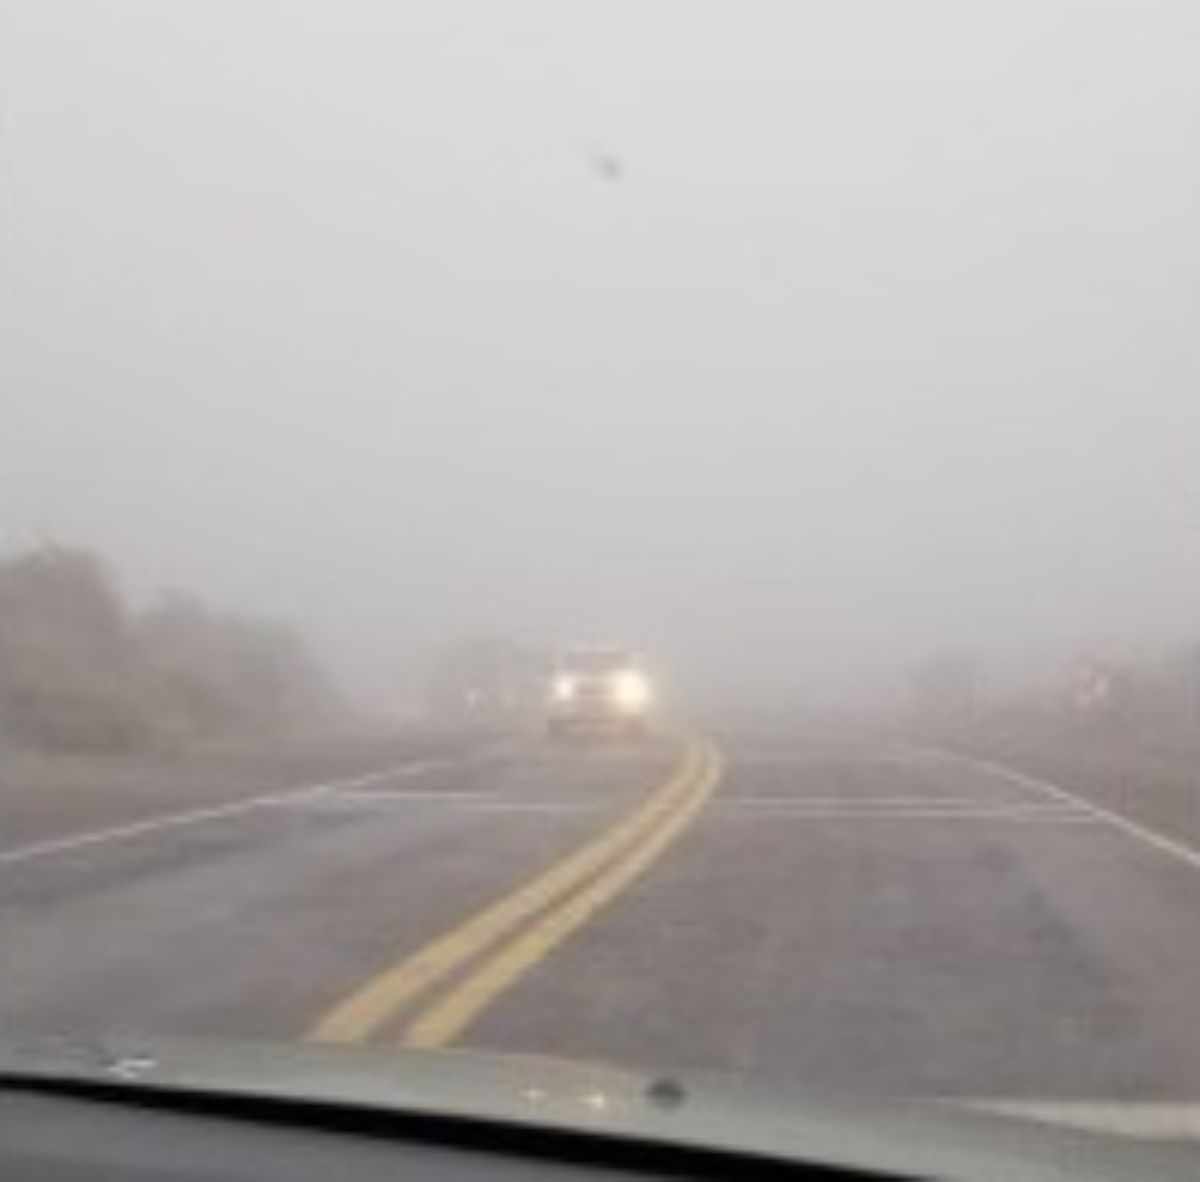 La neblina generó visibilidad escasa en algunas rutas